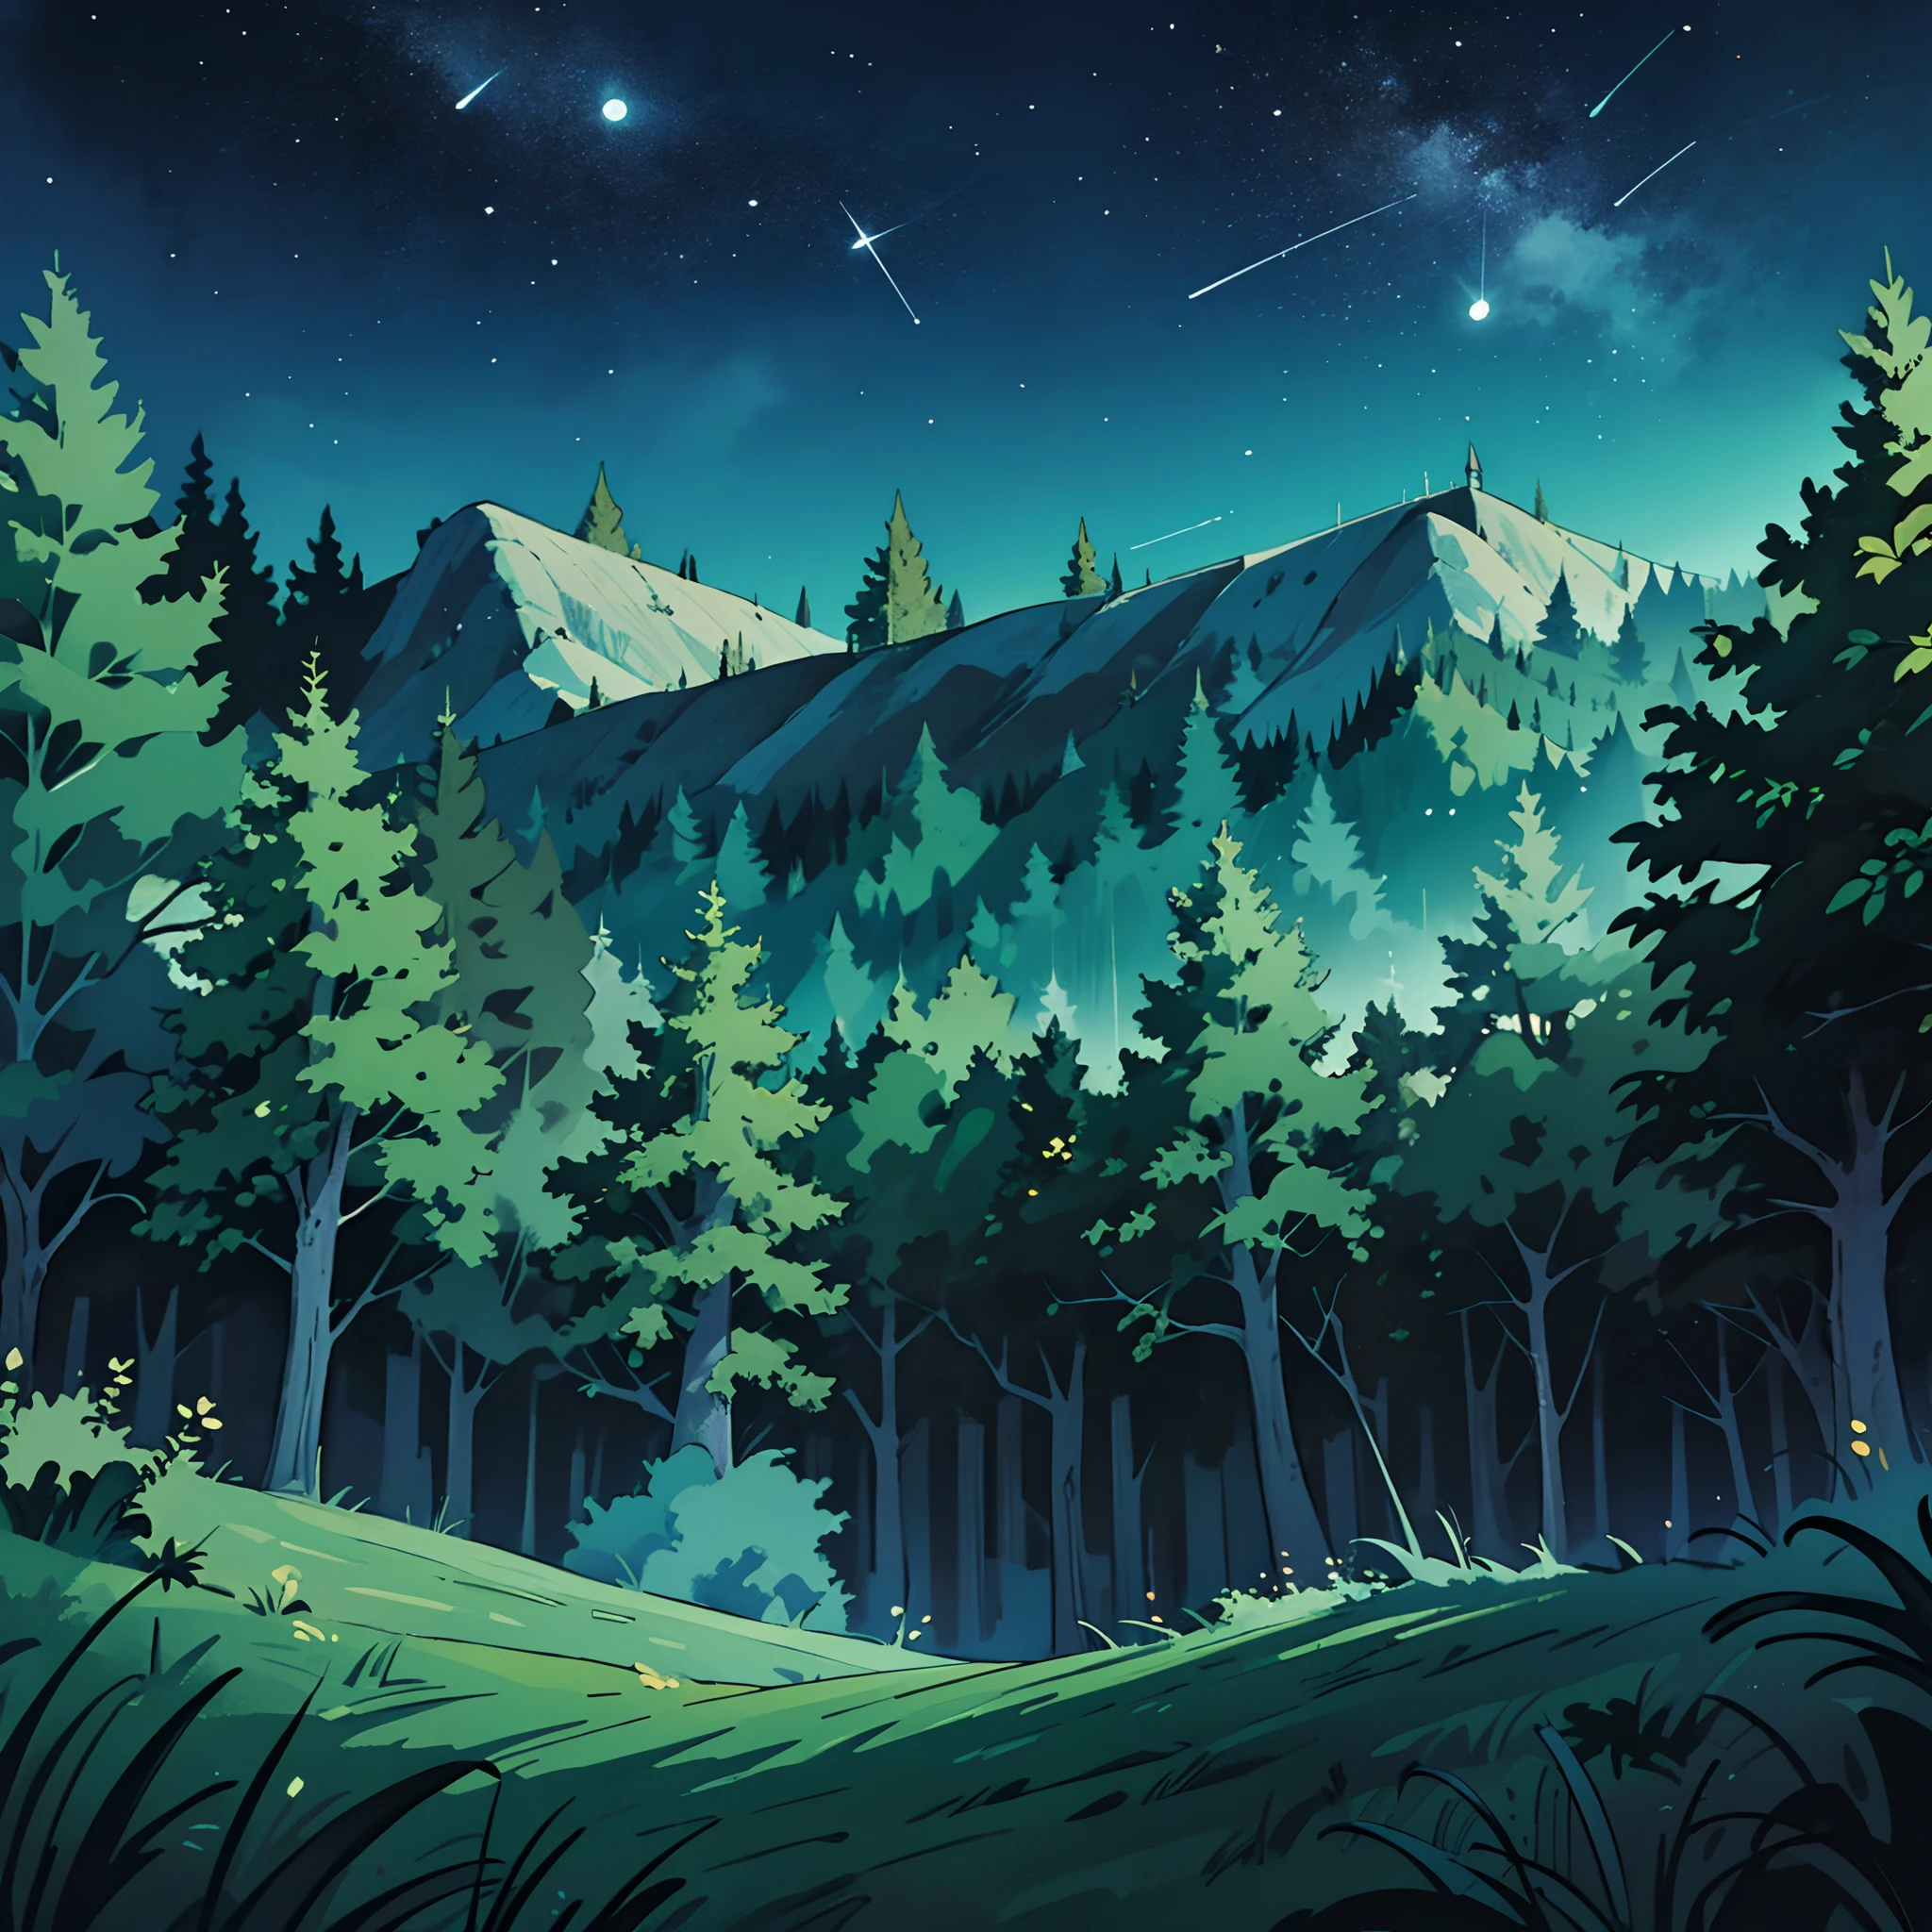 ภาพมุมกว้างของป่าในคืนฤดูร้อน, ถิ่นทุรกันดารที่มีต้นไม้เขียวขจีและท้องฟ้ายามค่ำคืนที่สดใส. พื้นหลังอะนิเมะ